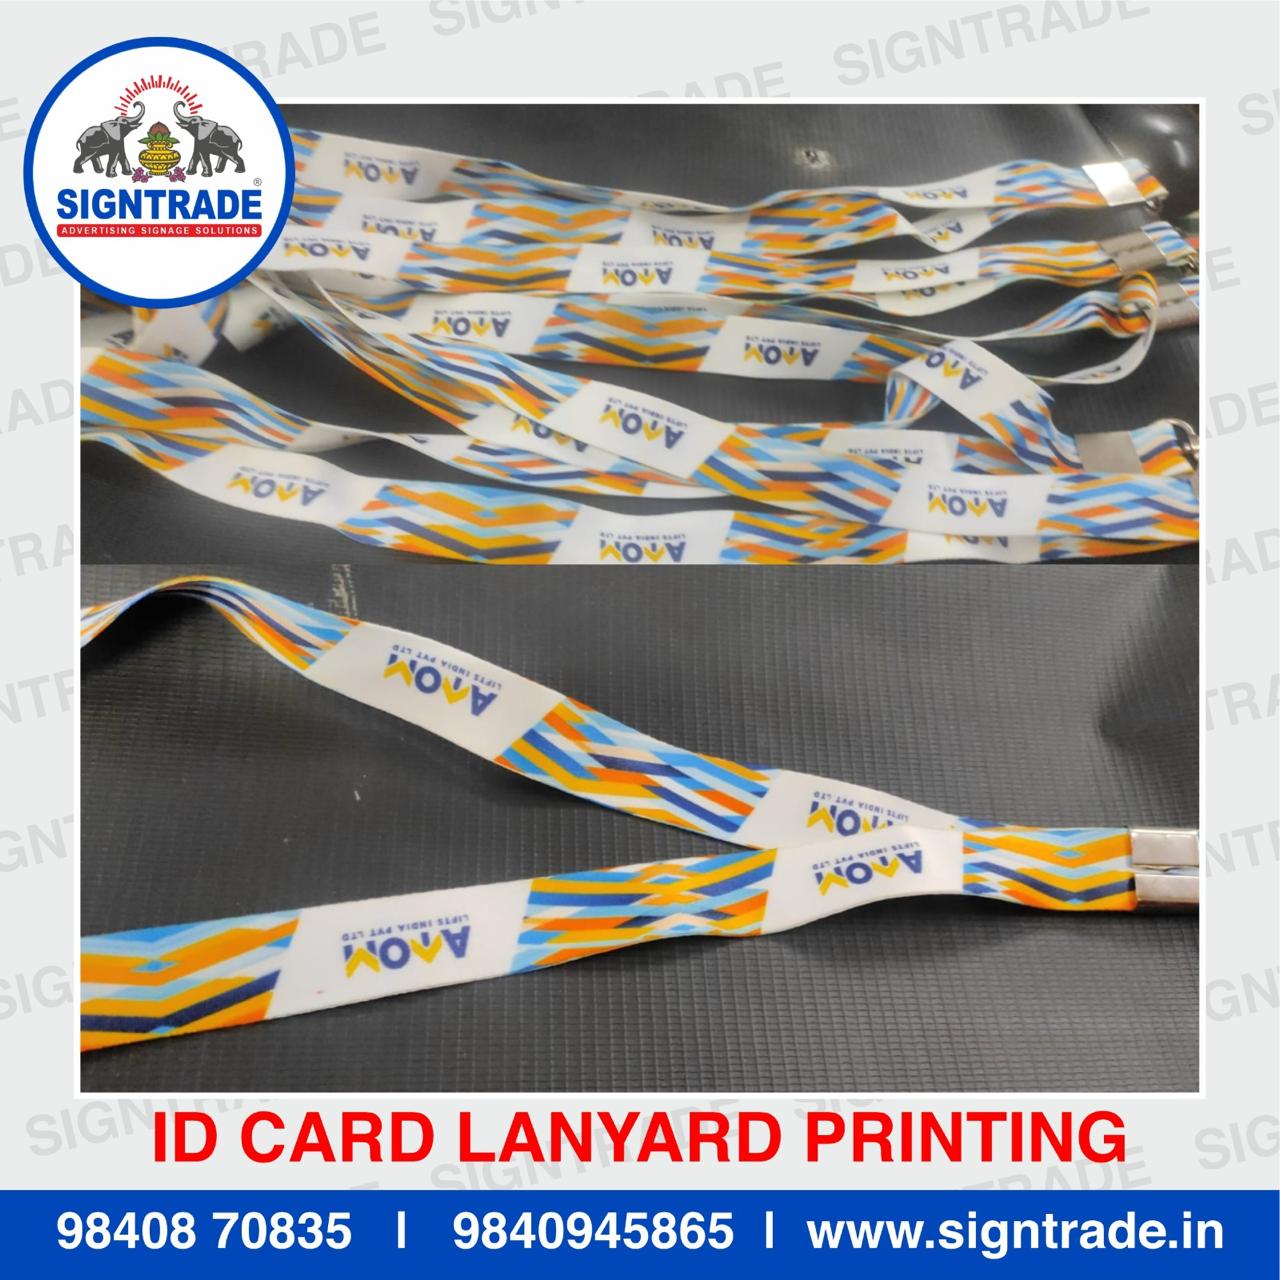 Lanyard Printing Service in Chennai